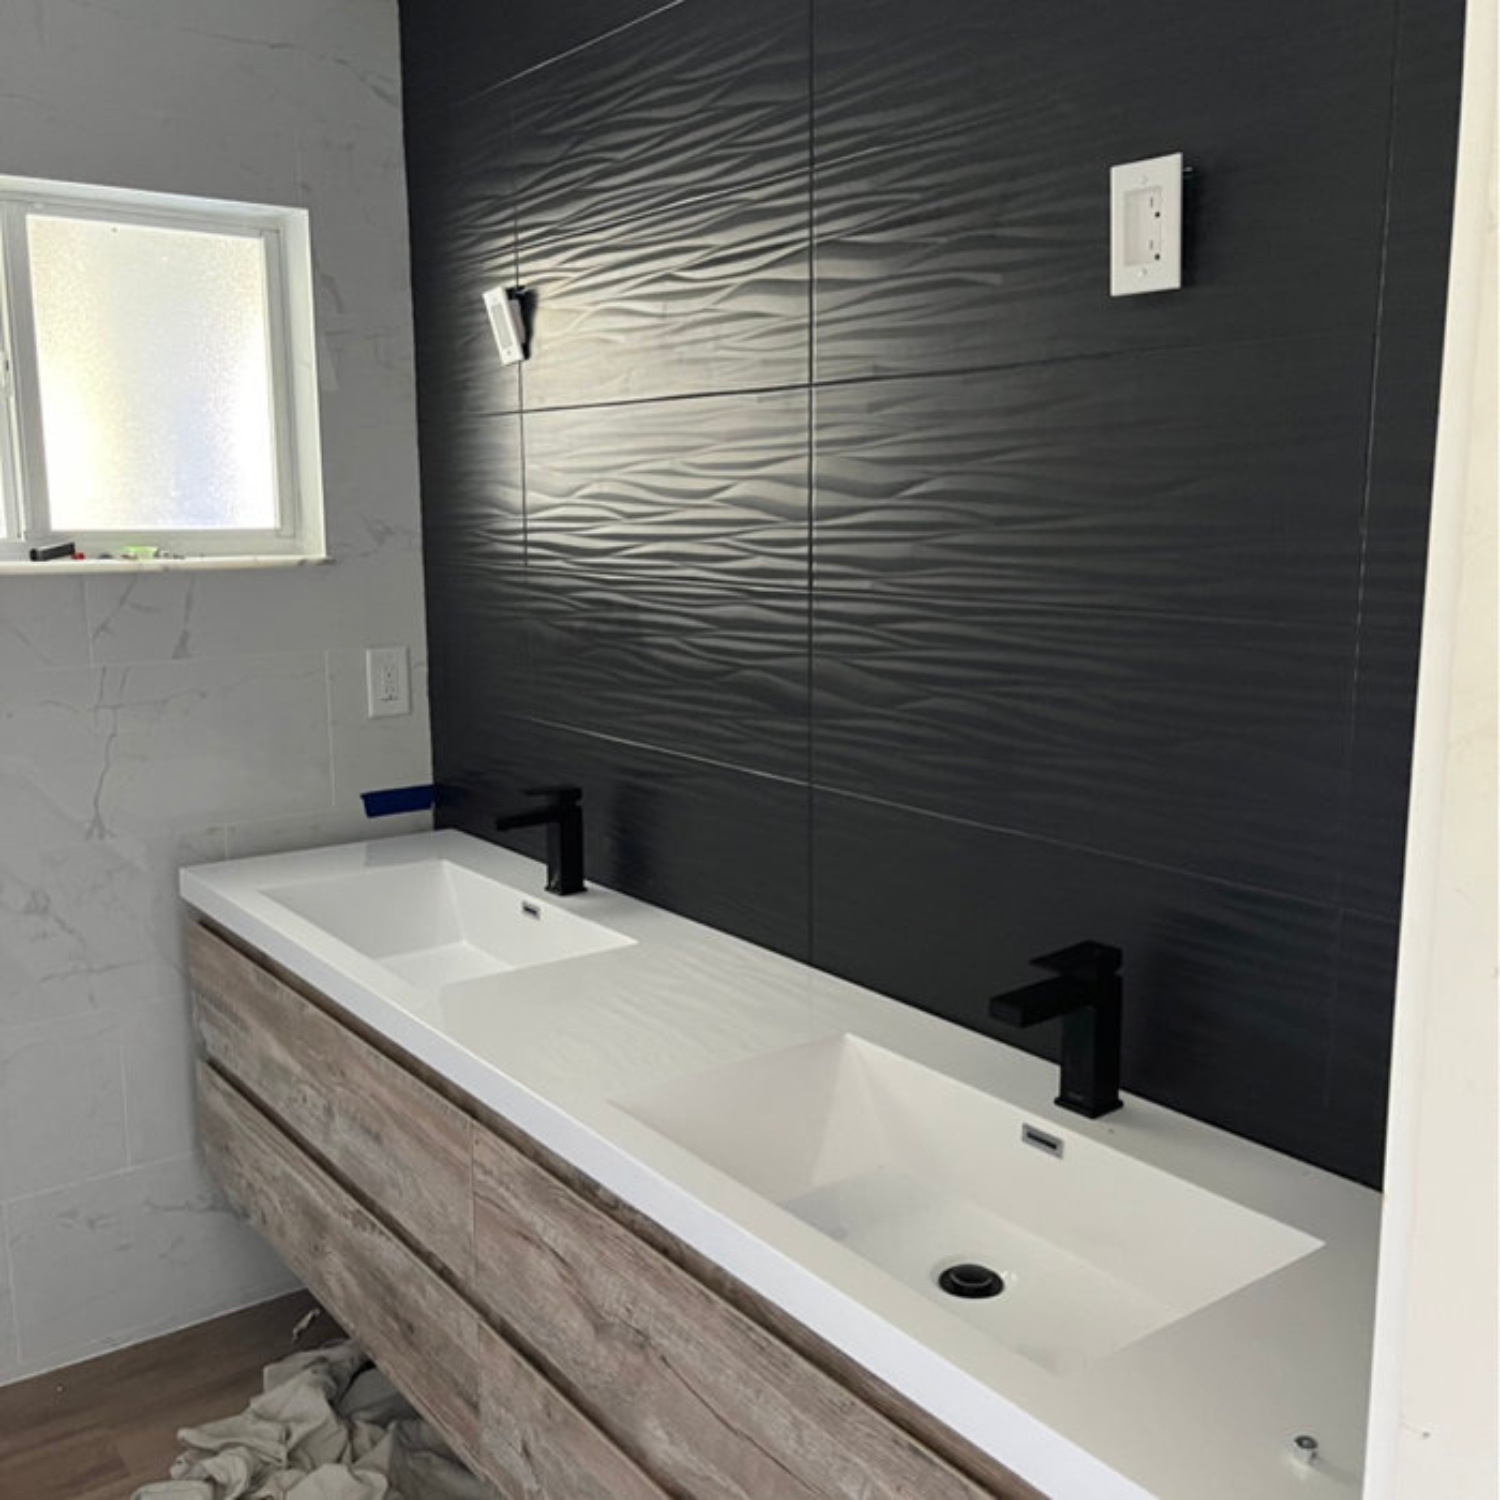 BOW 84" Floating Bathroom Vanity in Reclaimed Natural Wood by Moreno Bath Modern Vanities